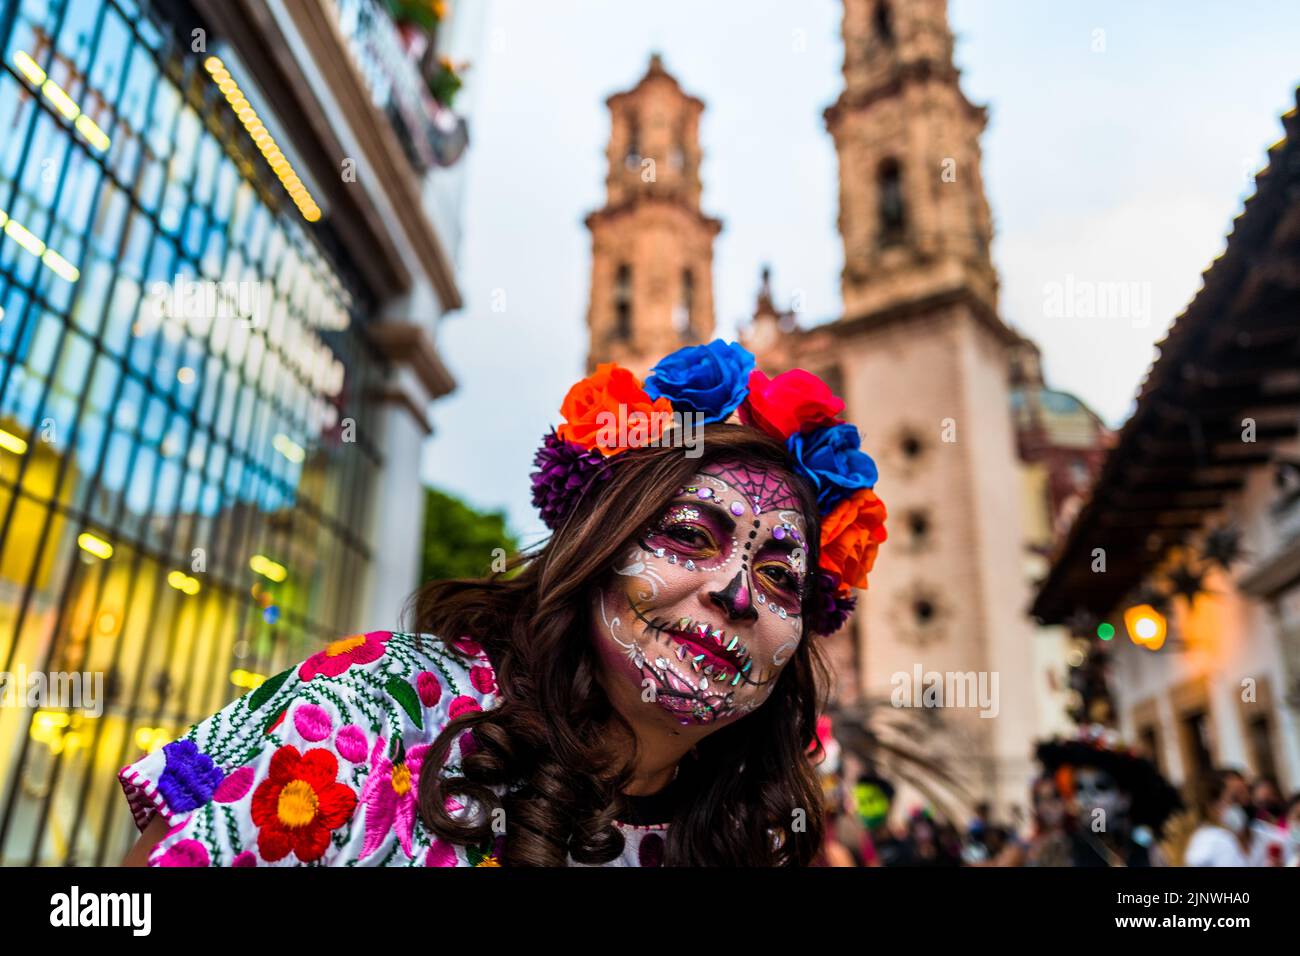 Una donna messicana, vestita come la Catrina, icona della cultura pop messicana, partecipa alle celebrazioni del giorno dei morti a Taxco, Messico. Foto Stock